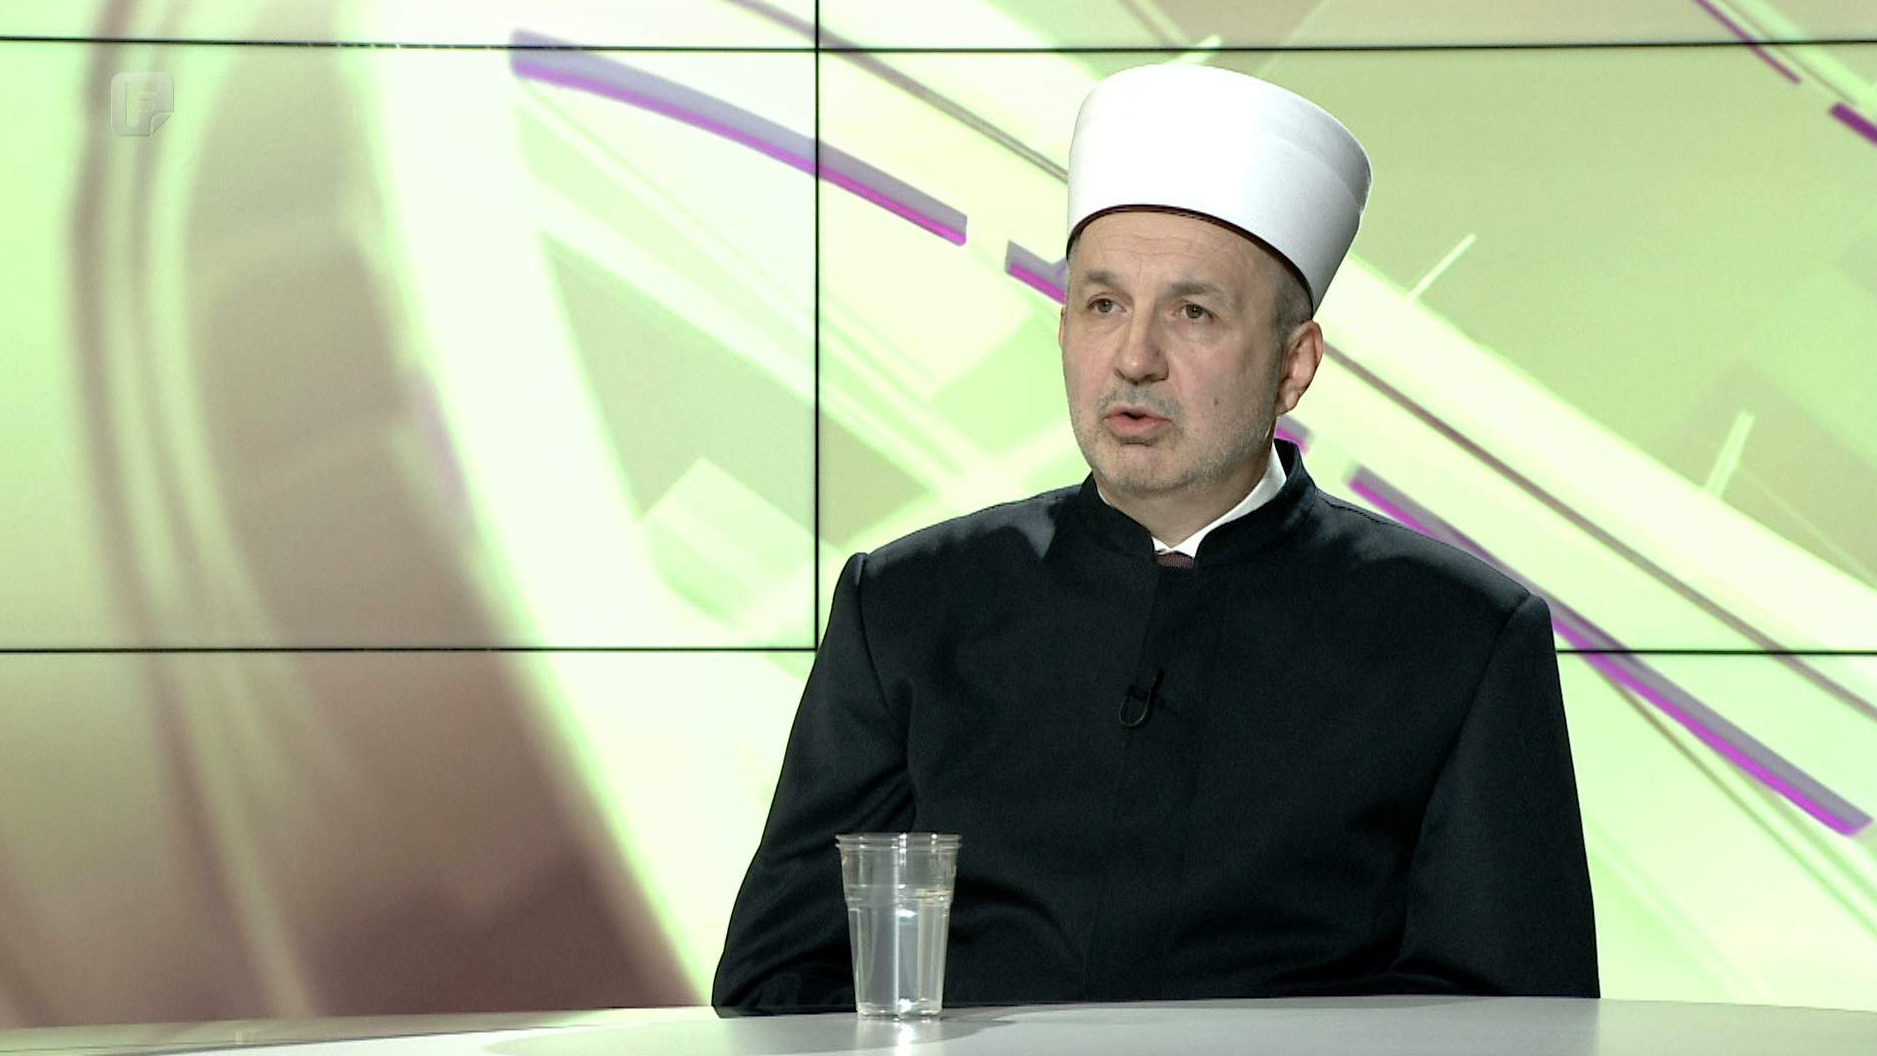 Muftija dr. Nedžad Grabus: Ovdje je važno sačuvati razboritost